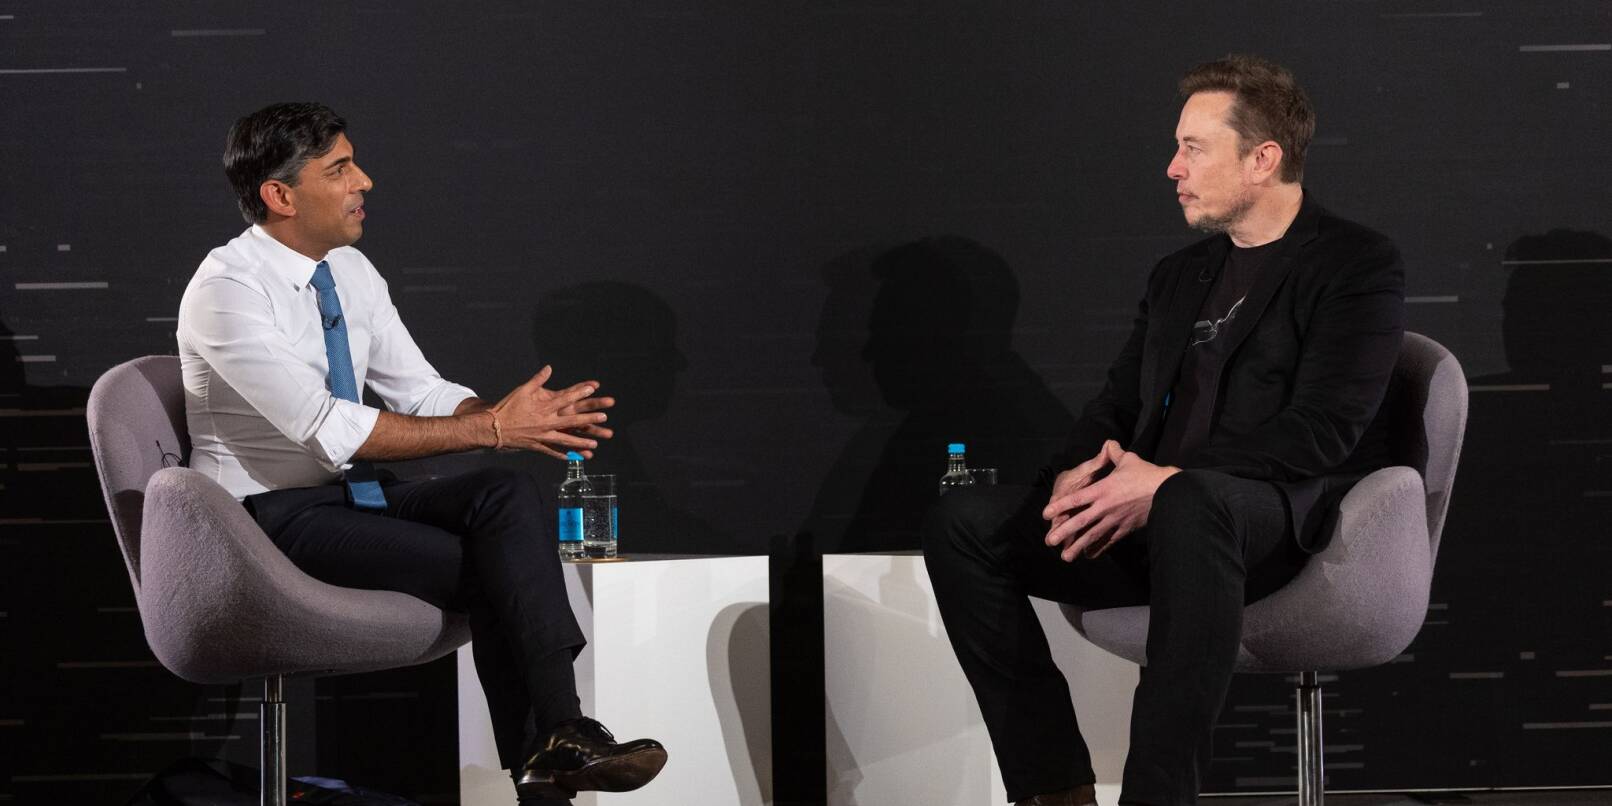 Rishi Sunak (l), Premierminister von Großbritannien, im Gespräch mit Elon Musk, CEO von Tesla und SpaceX.